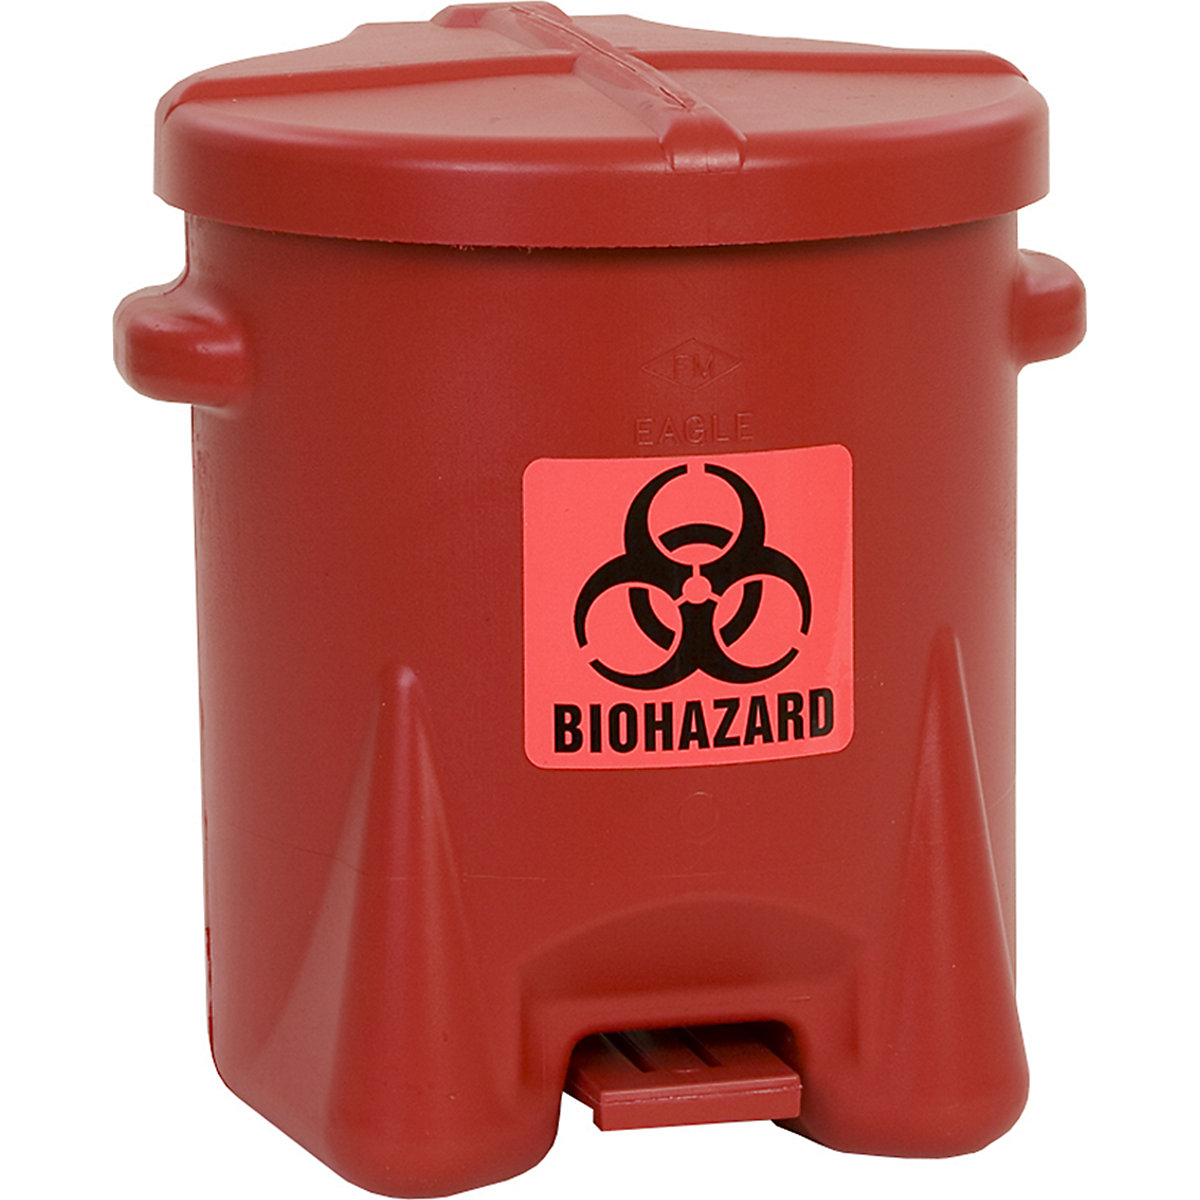 Sigurnosni spremnik za zbrinjavanje od PE materijala za biološki opasan otpad - Justrite